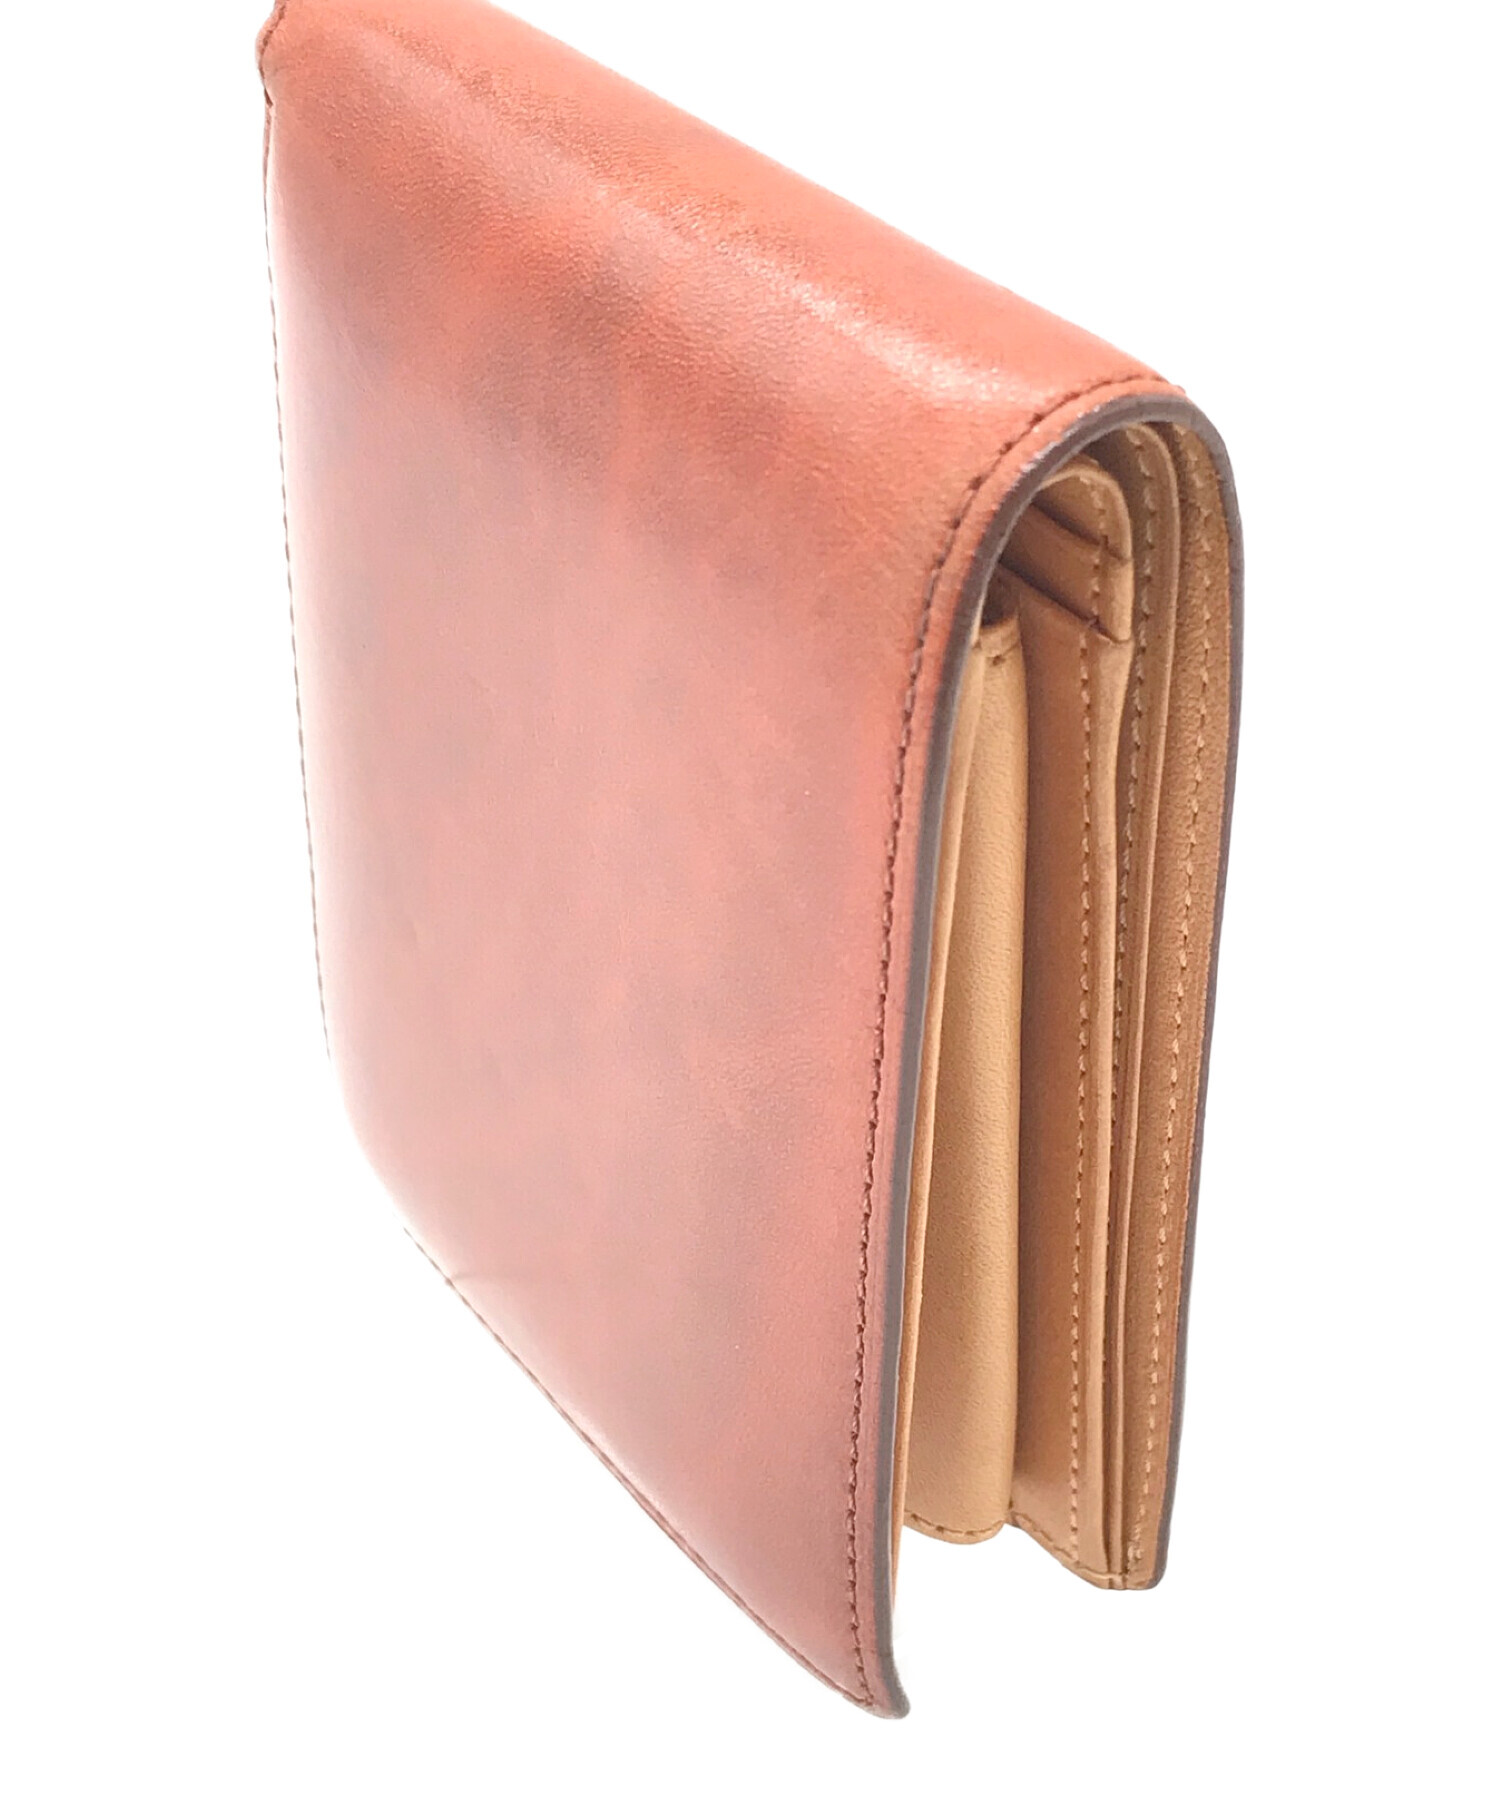 CYPRIS (キプリス) 2つ折り財布 ブラウン サイズ:実寸サイズにてご確認ください。